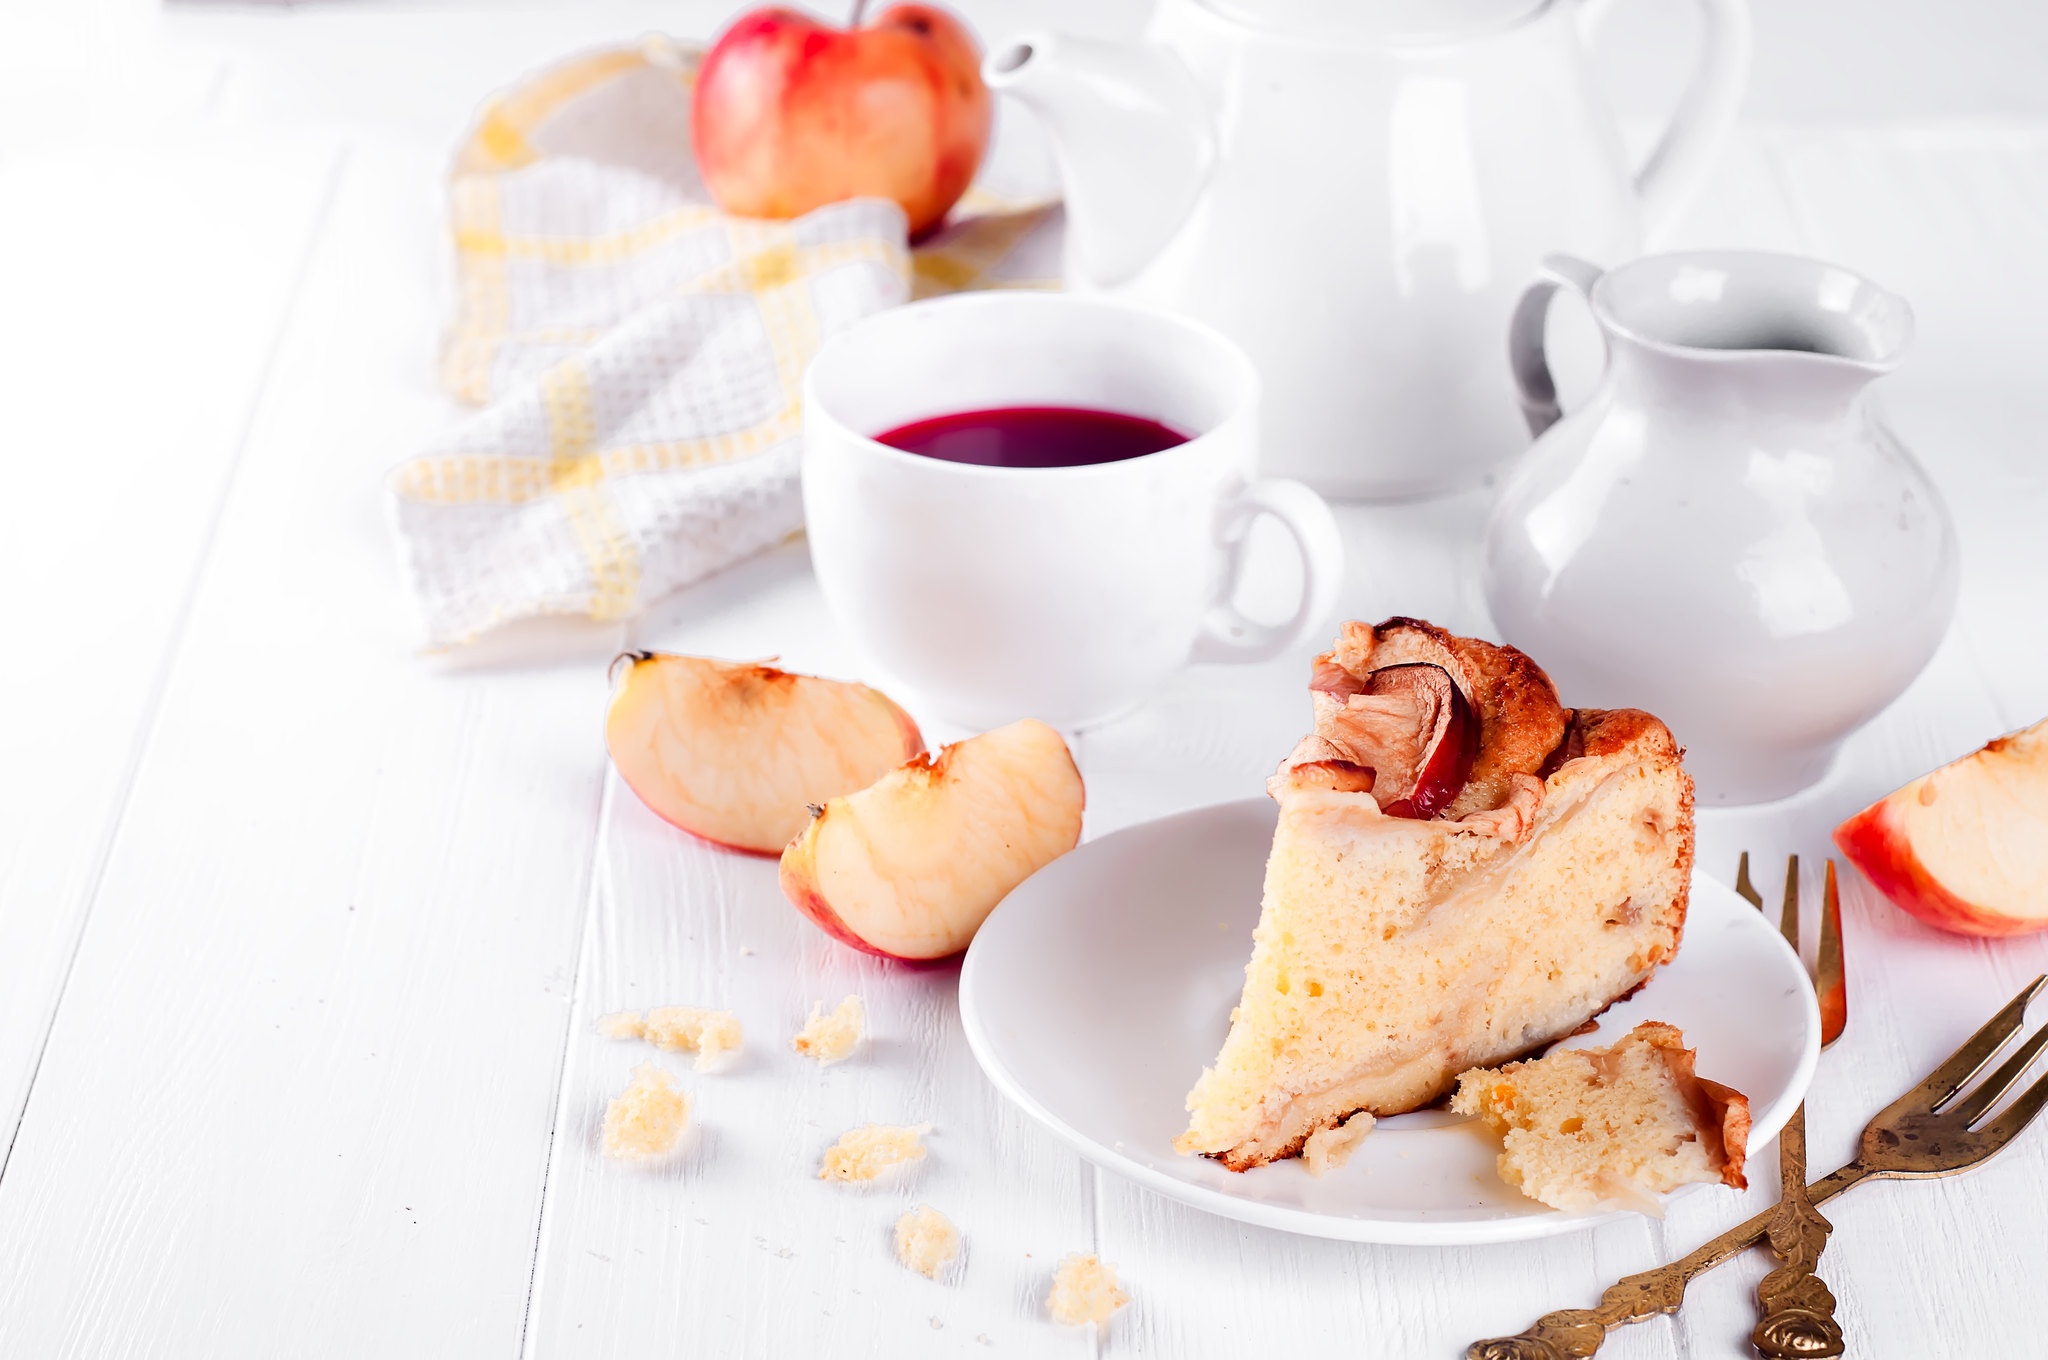 Free download wallpaper Food, Apple, Tea, Pie on your PC desktop